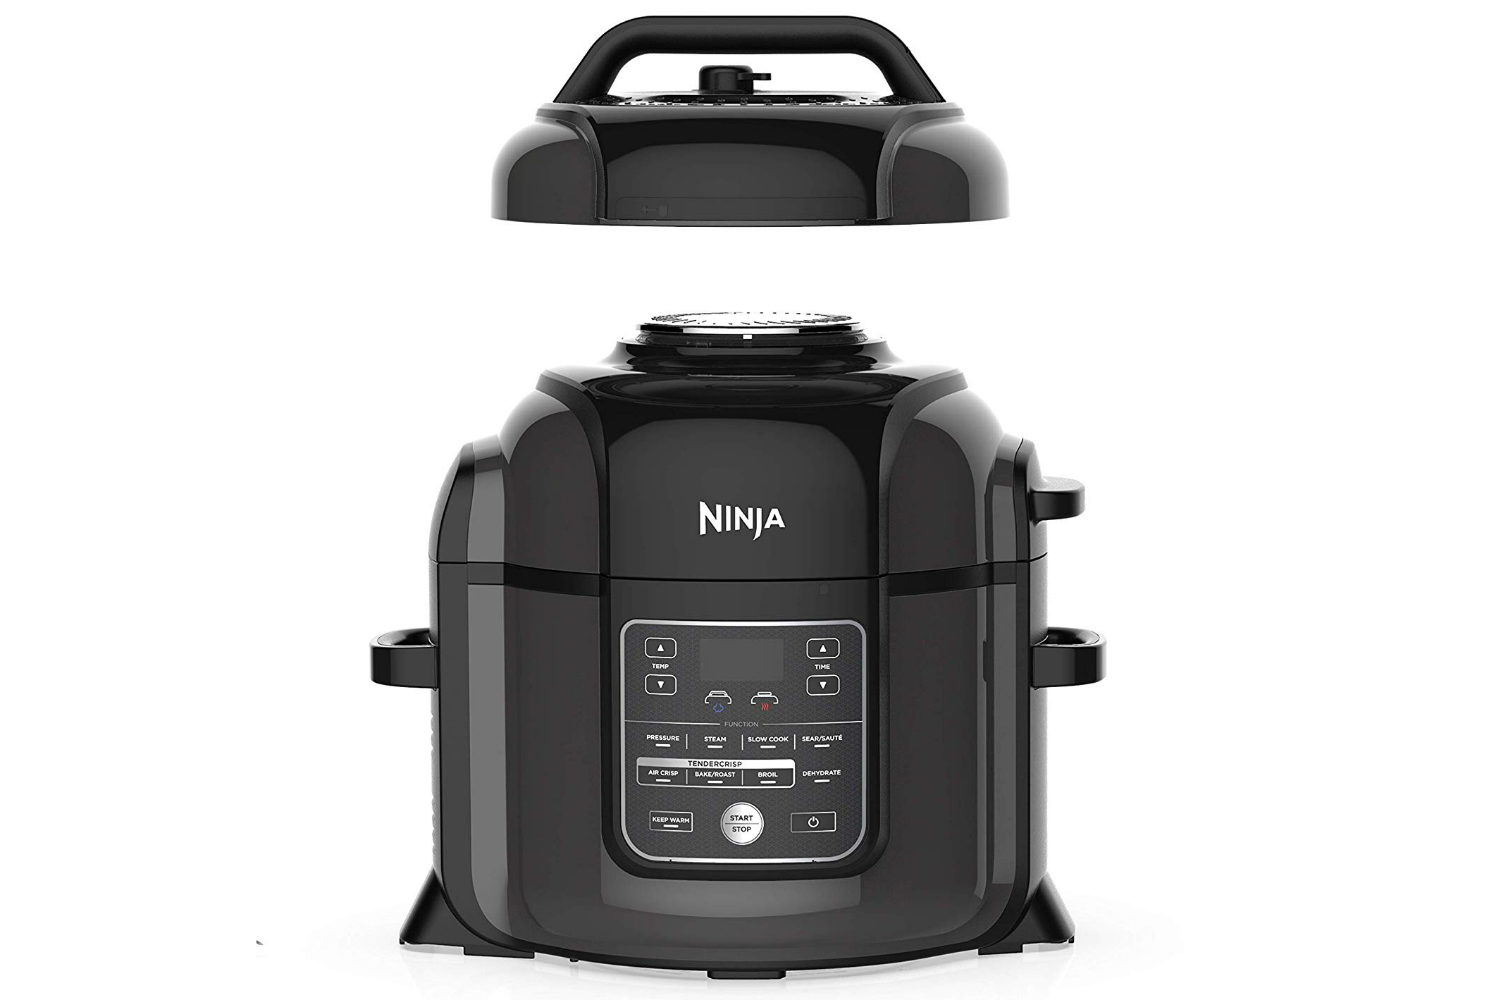 Ninja's 8-quart family Foodi 14-in-1 Air Fry Multi-Cooker hits $250   2023 low ($100 off)